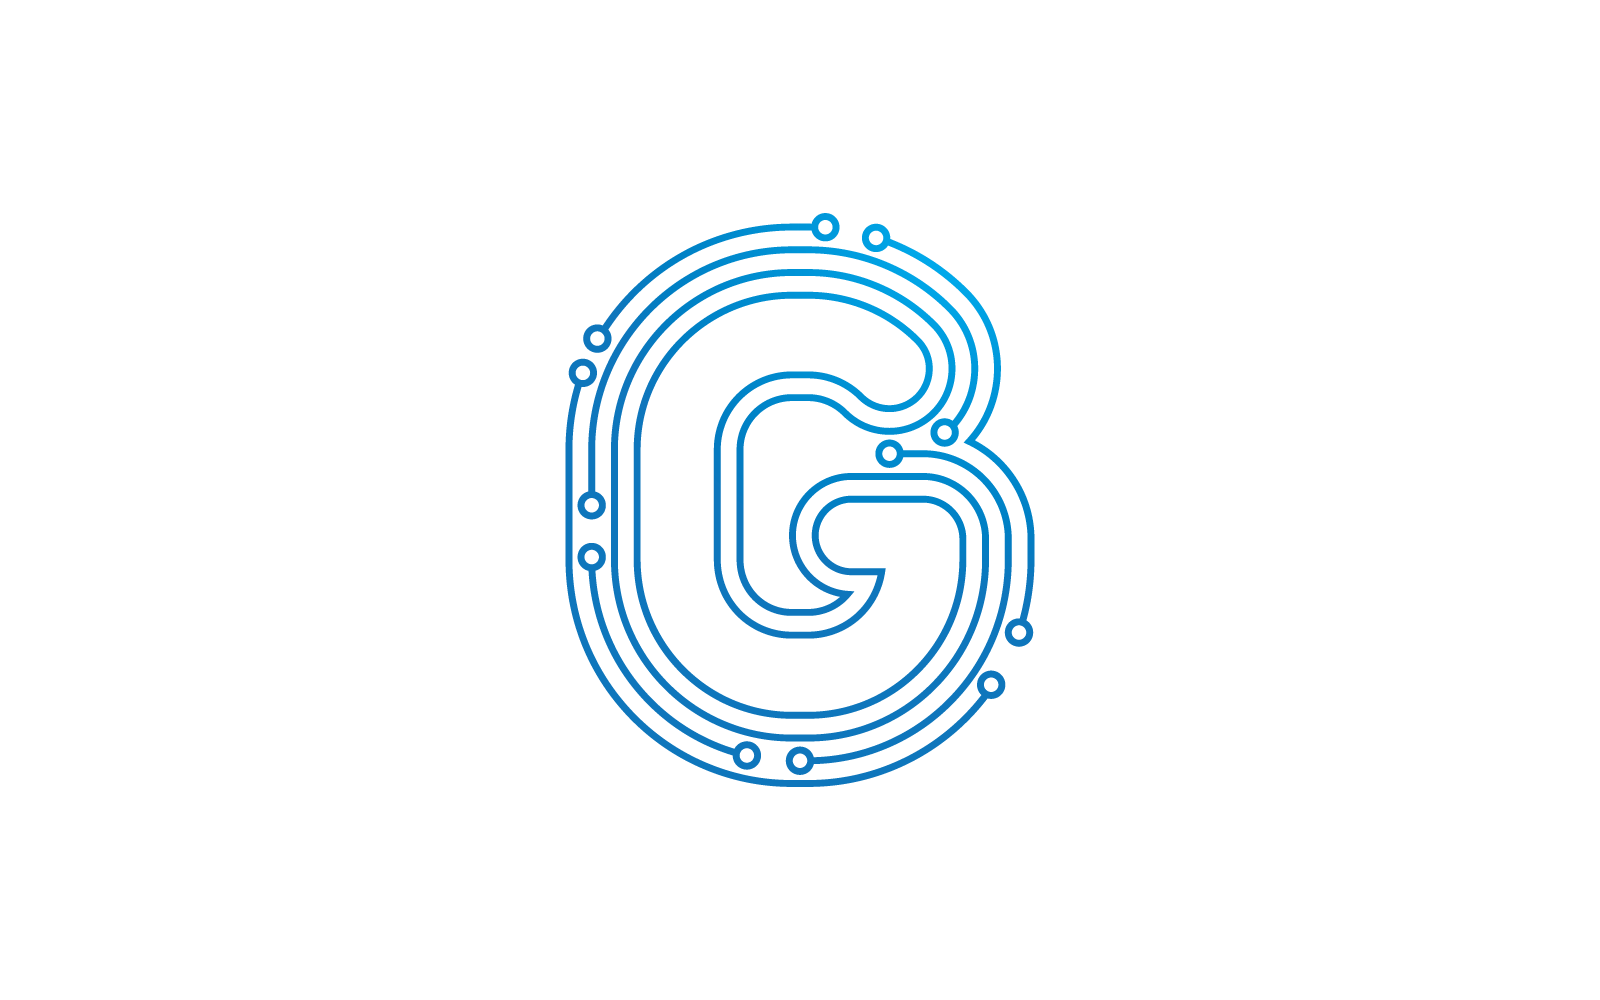 G 首字母电路技术插图徽标矢量模板